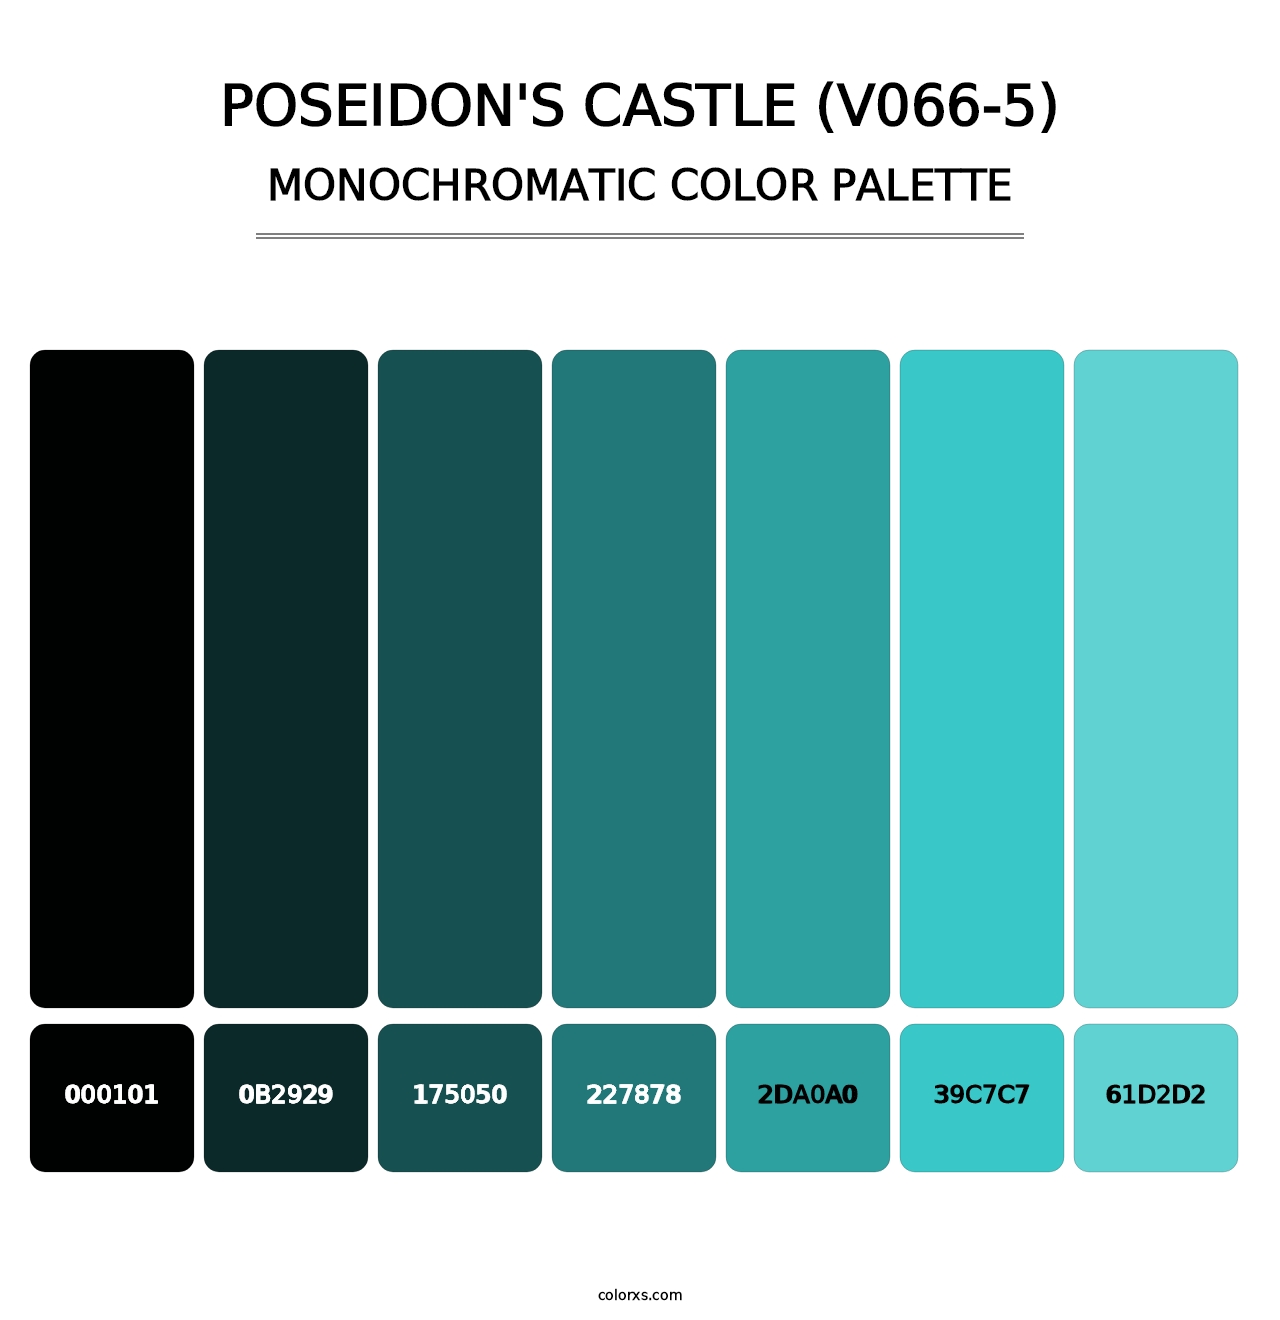 Poseidon's Castle (V066-5) - Monochromatic Color Palette